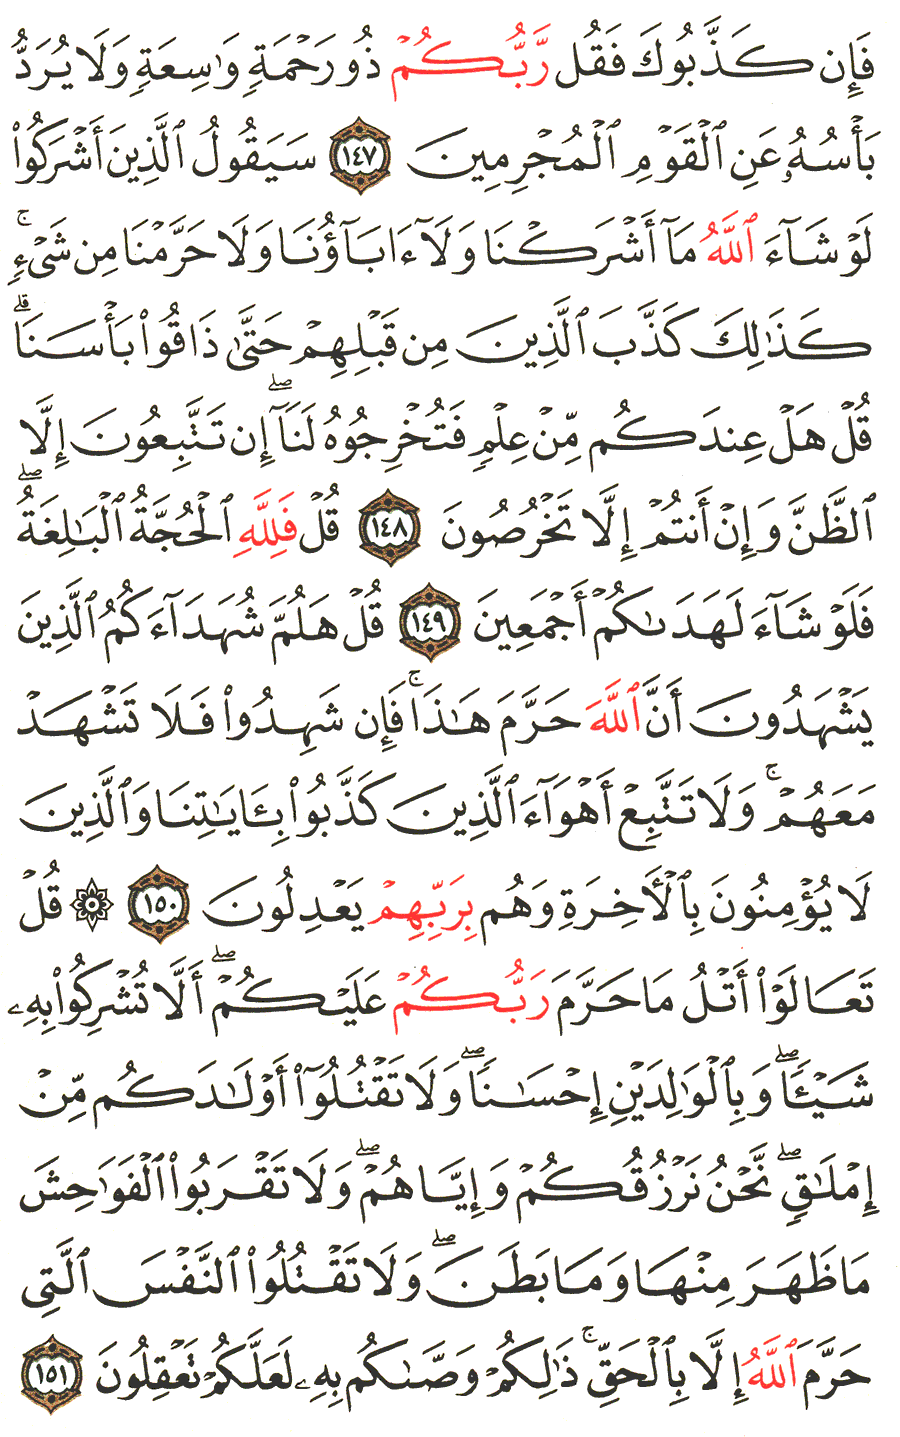 الصفحة 148 من القرآن الكريم